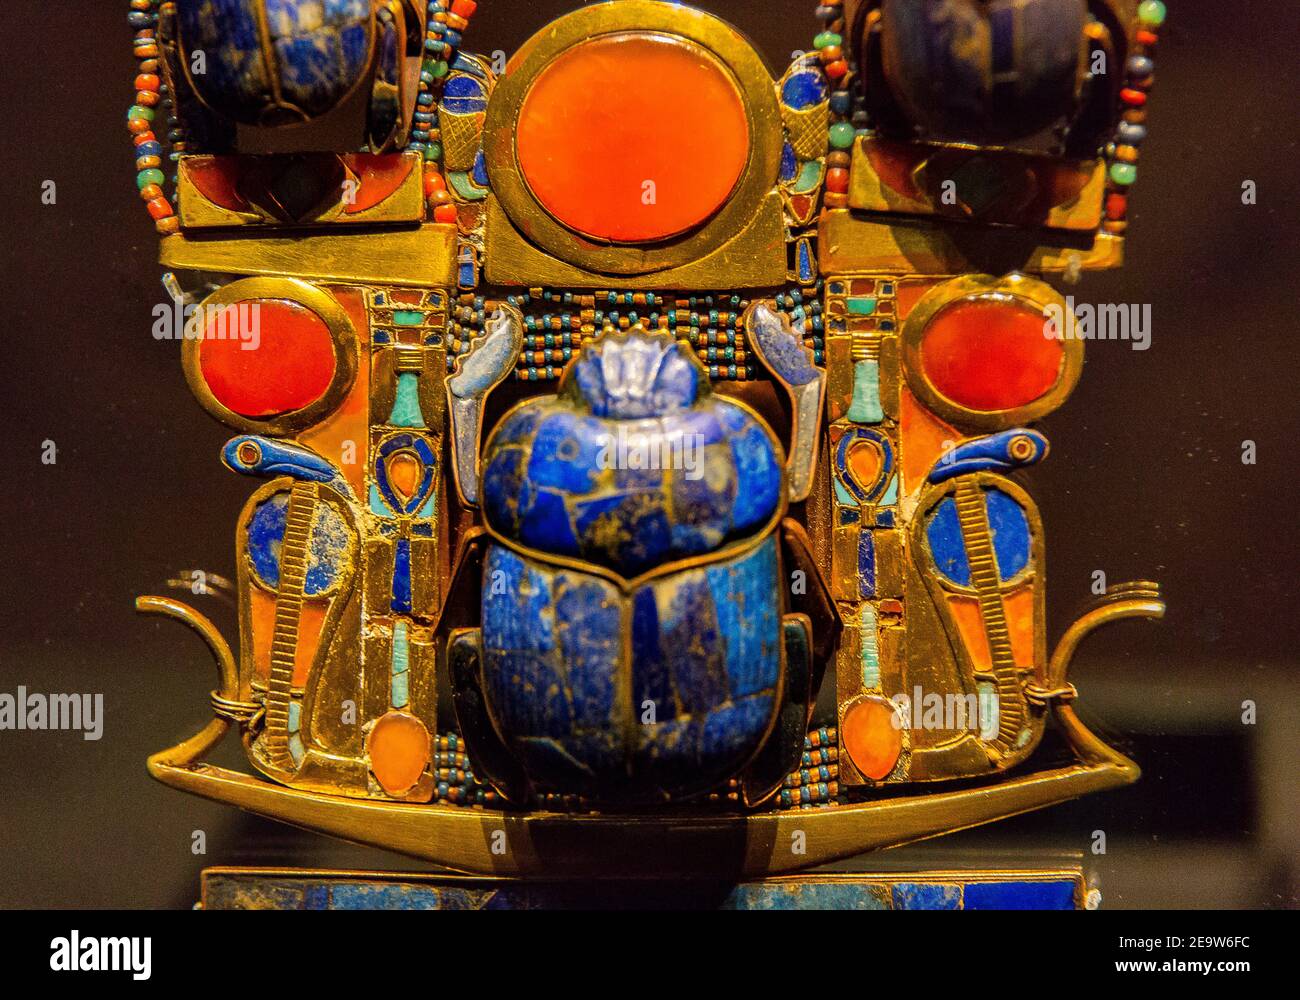 Egypte, le Caire, Toutankhamon bijoux : pectoral complexe flexible montrant une barque, des serpents solaires et un scarabée tenant le soleil. Banque D'Images